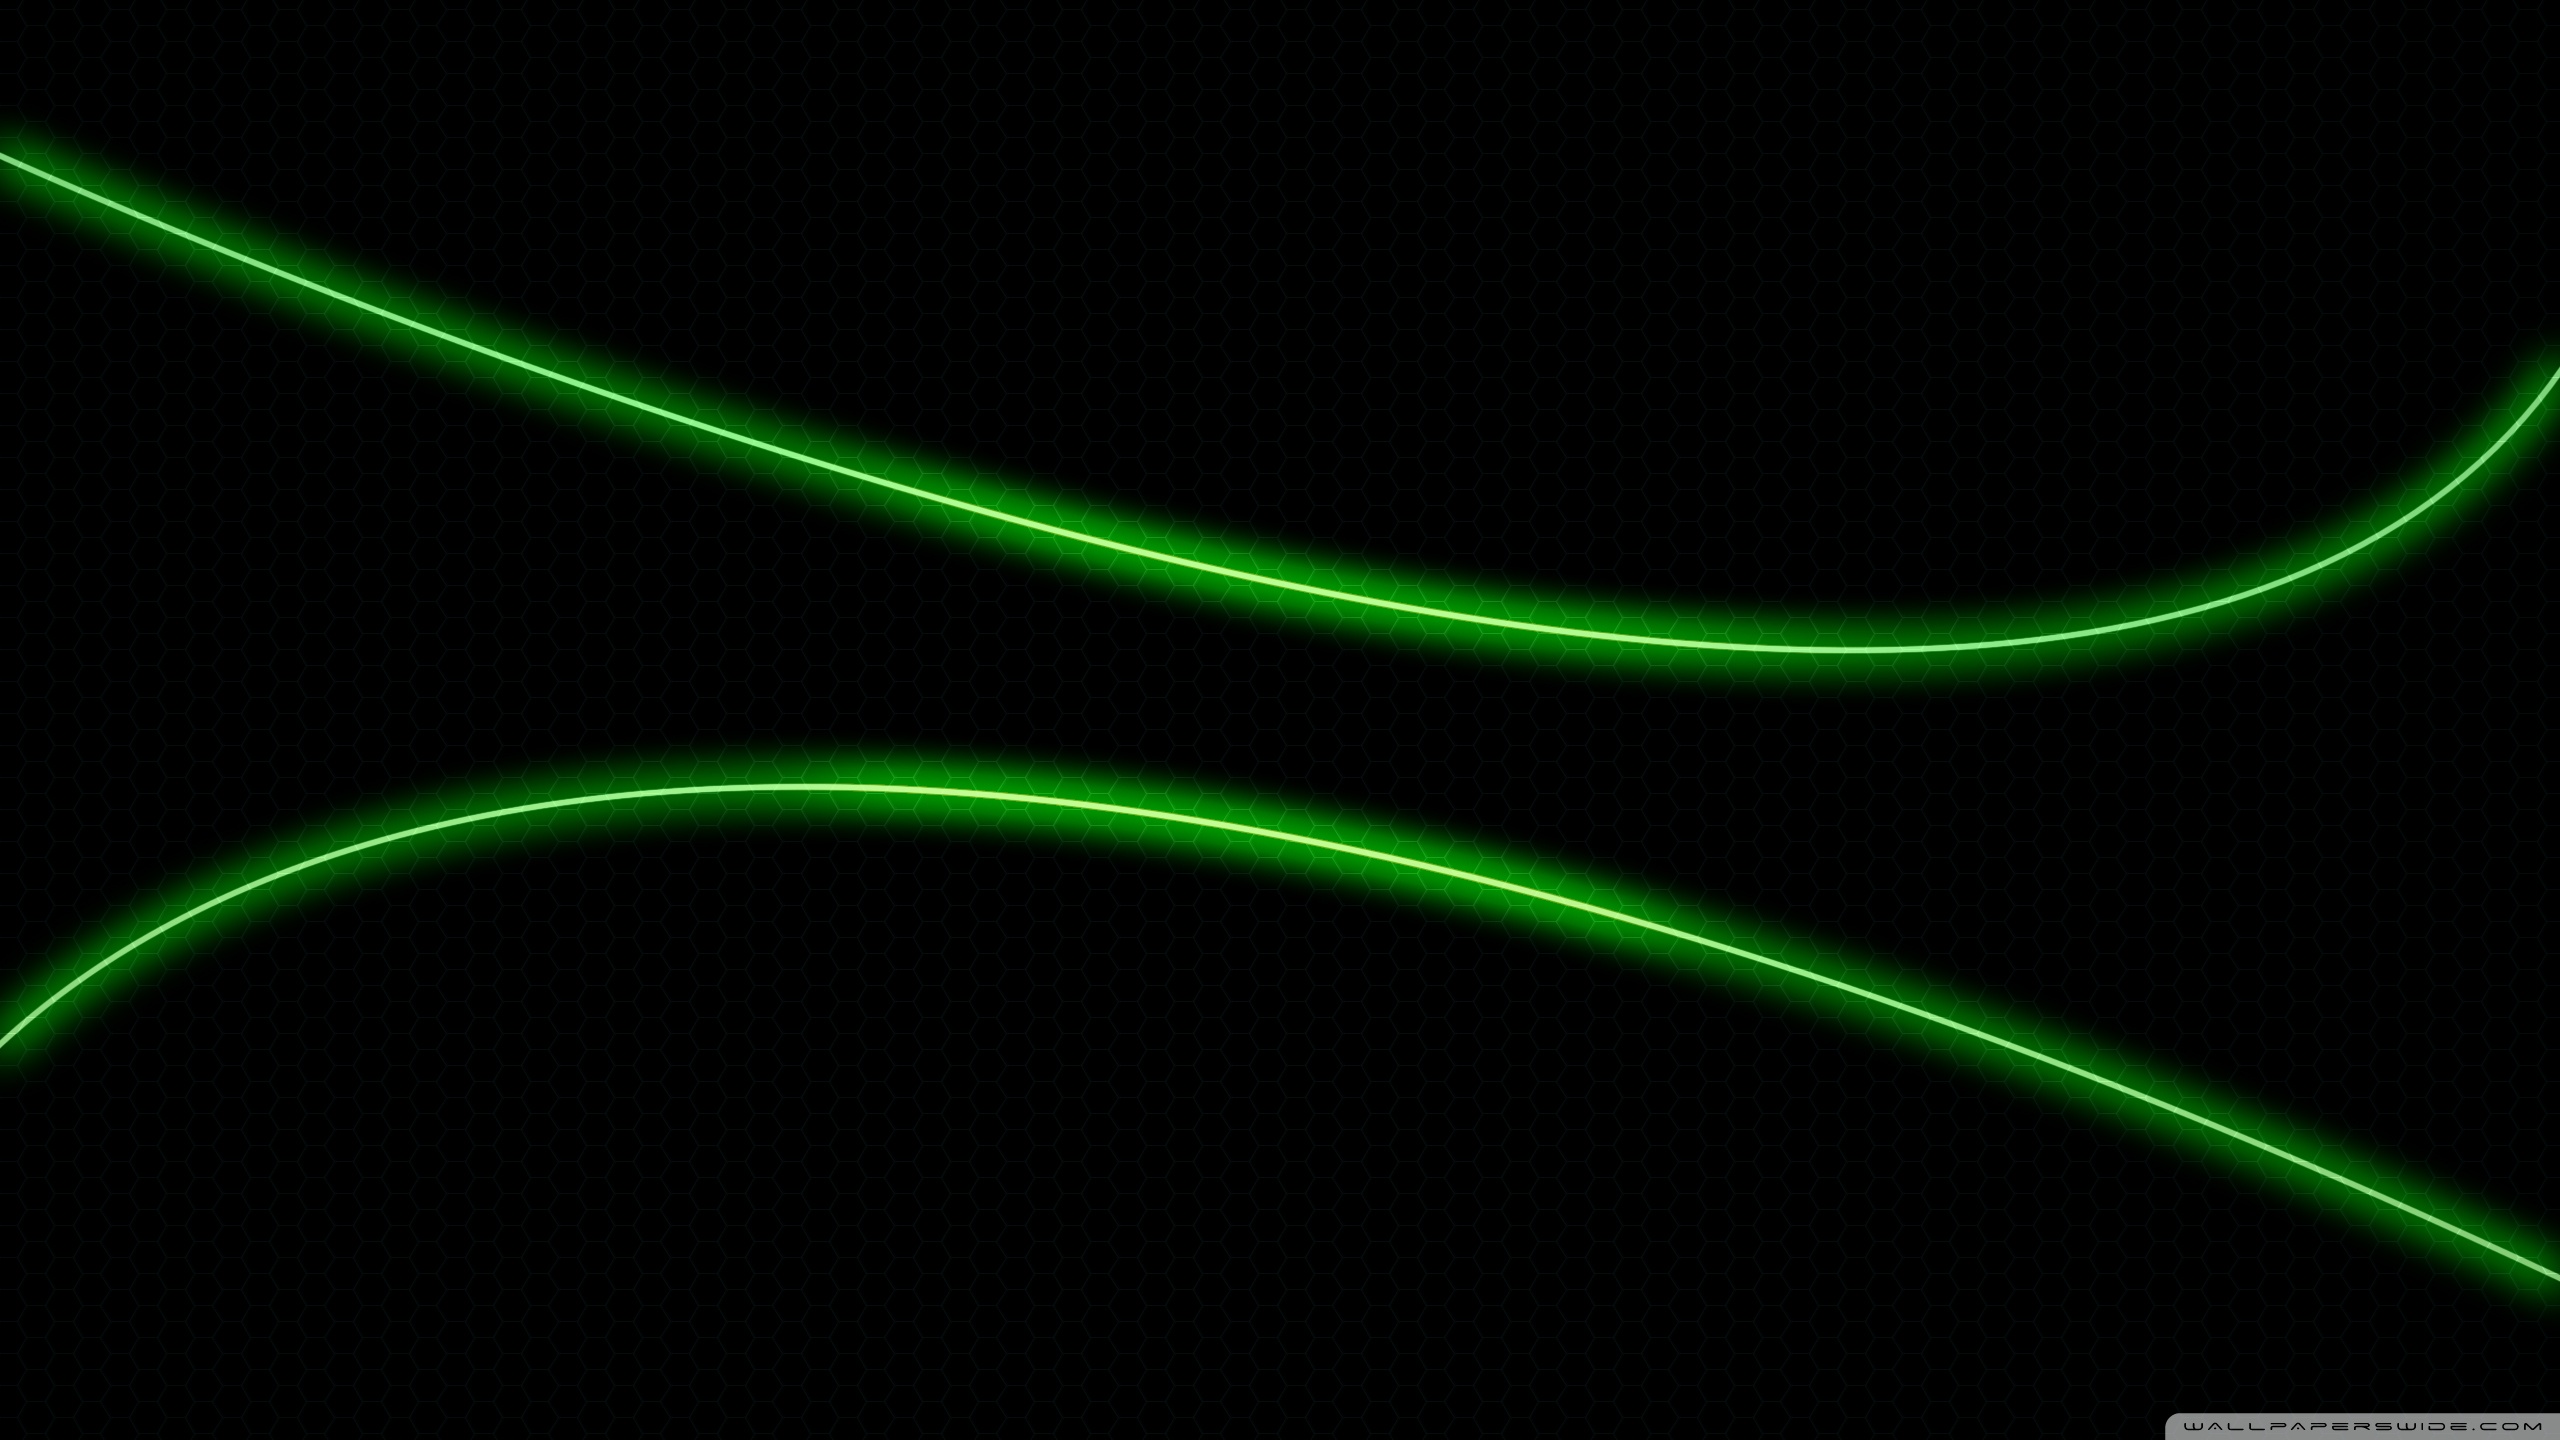 Green neon light wallpaper 2560x1440 wallpaper 2560x1440 231956